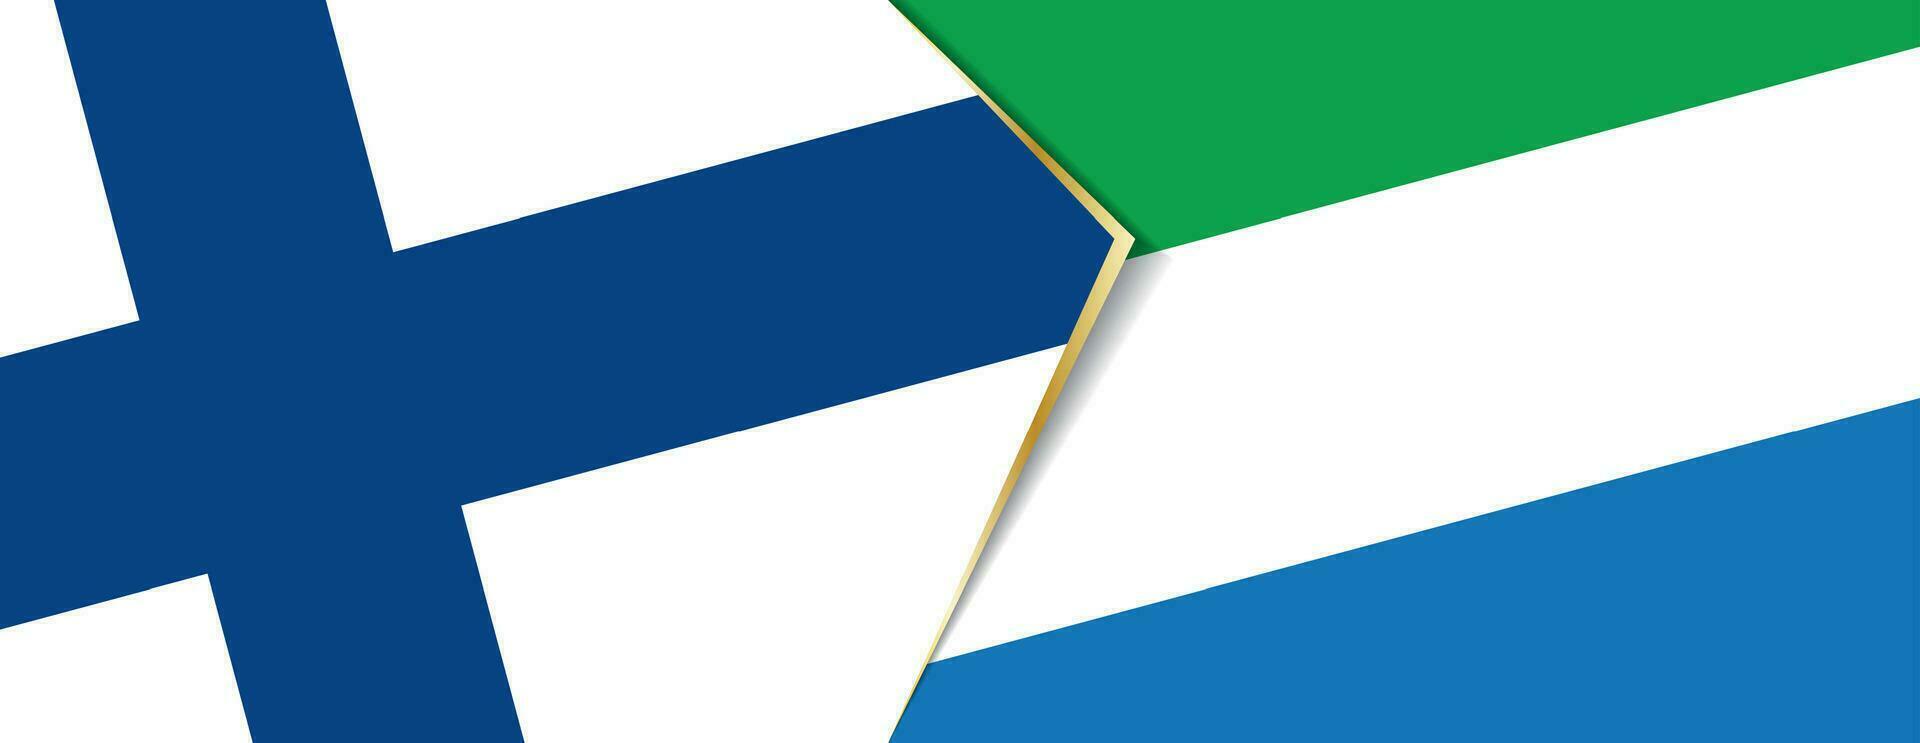 finland och sierra leone flaggor, två vektor flaggor.